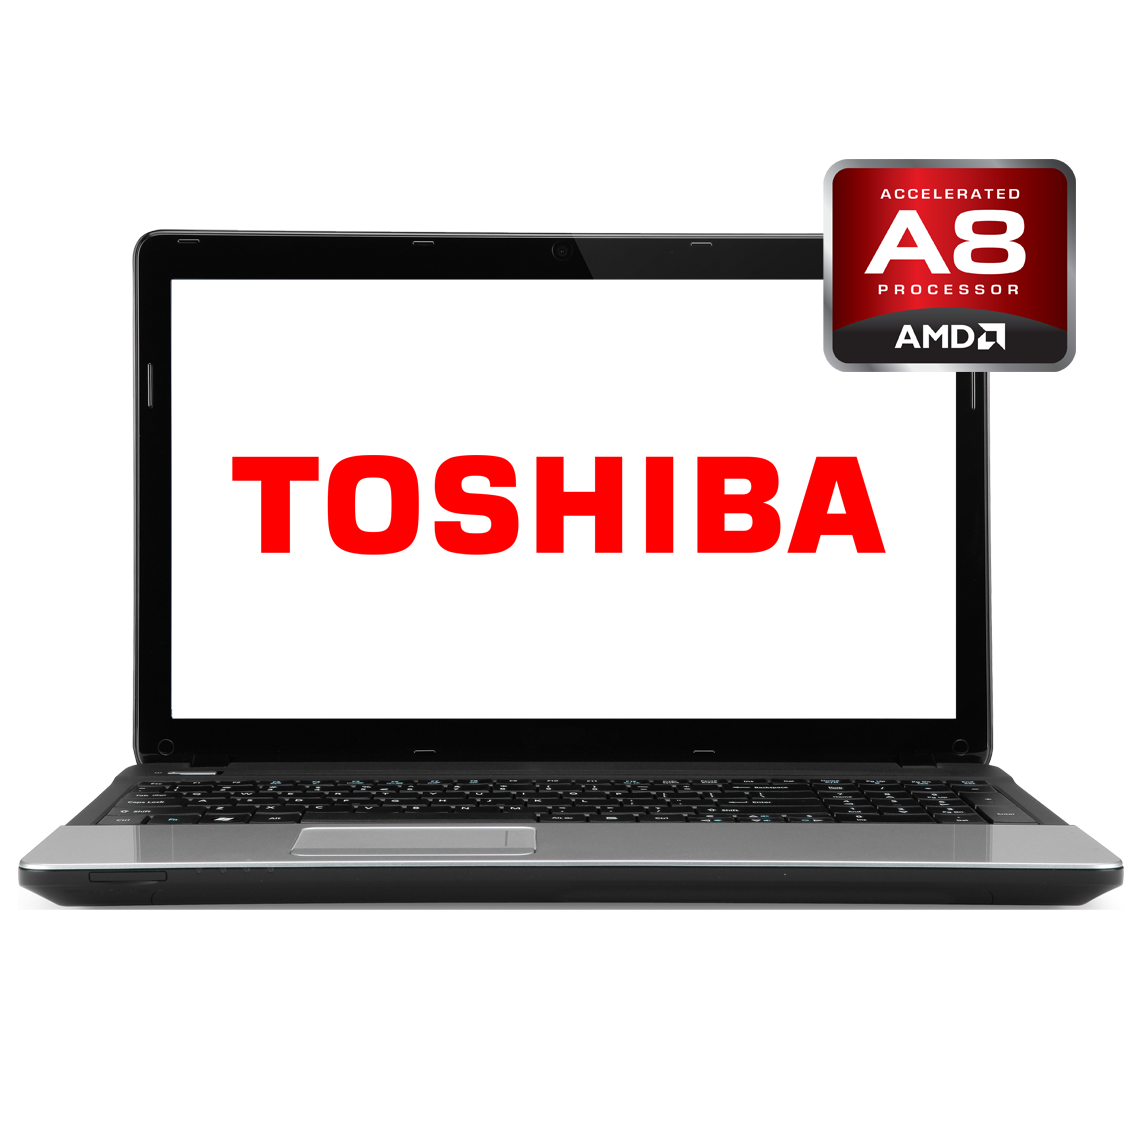 Toshiba - 17.3 inch AMD A8